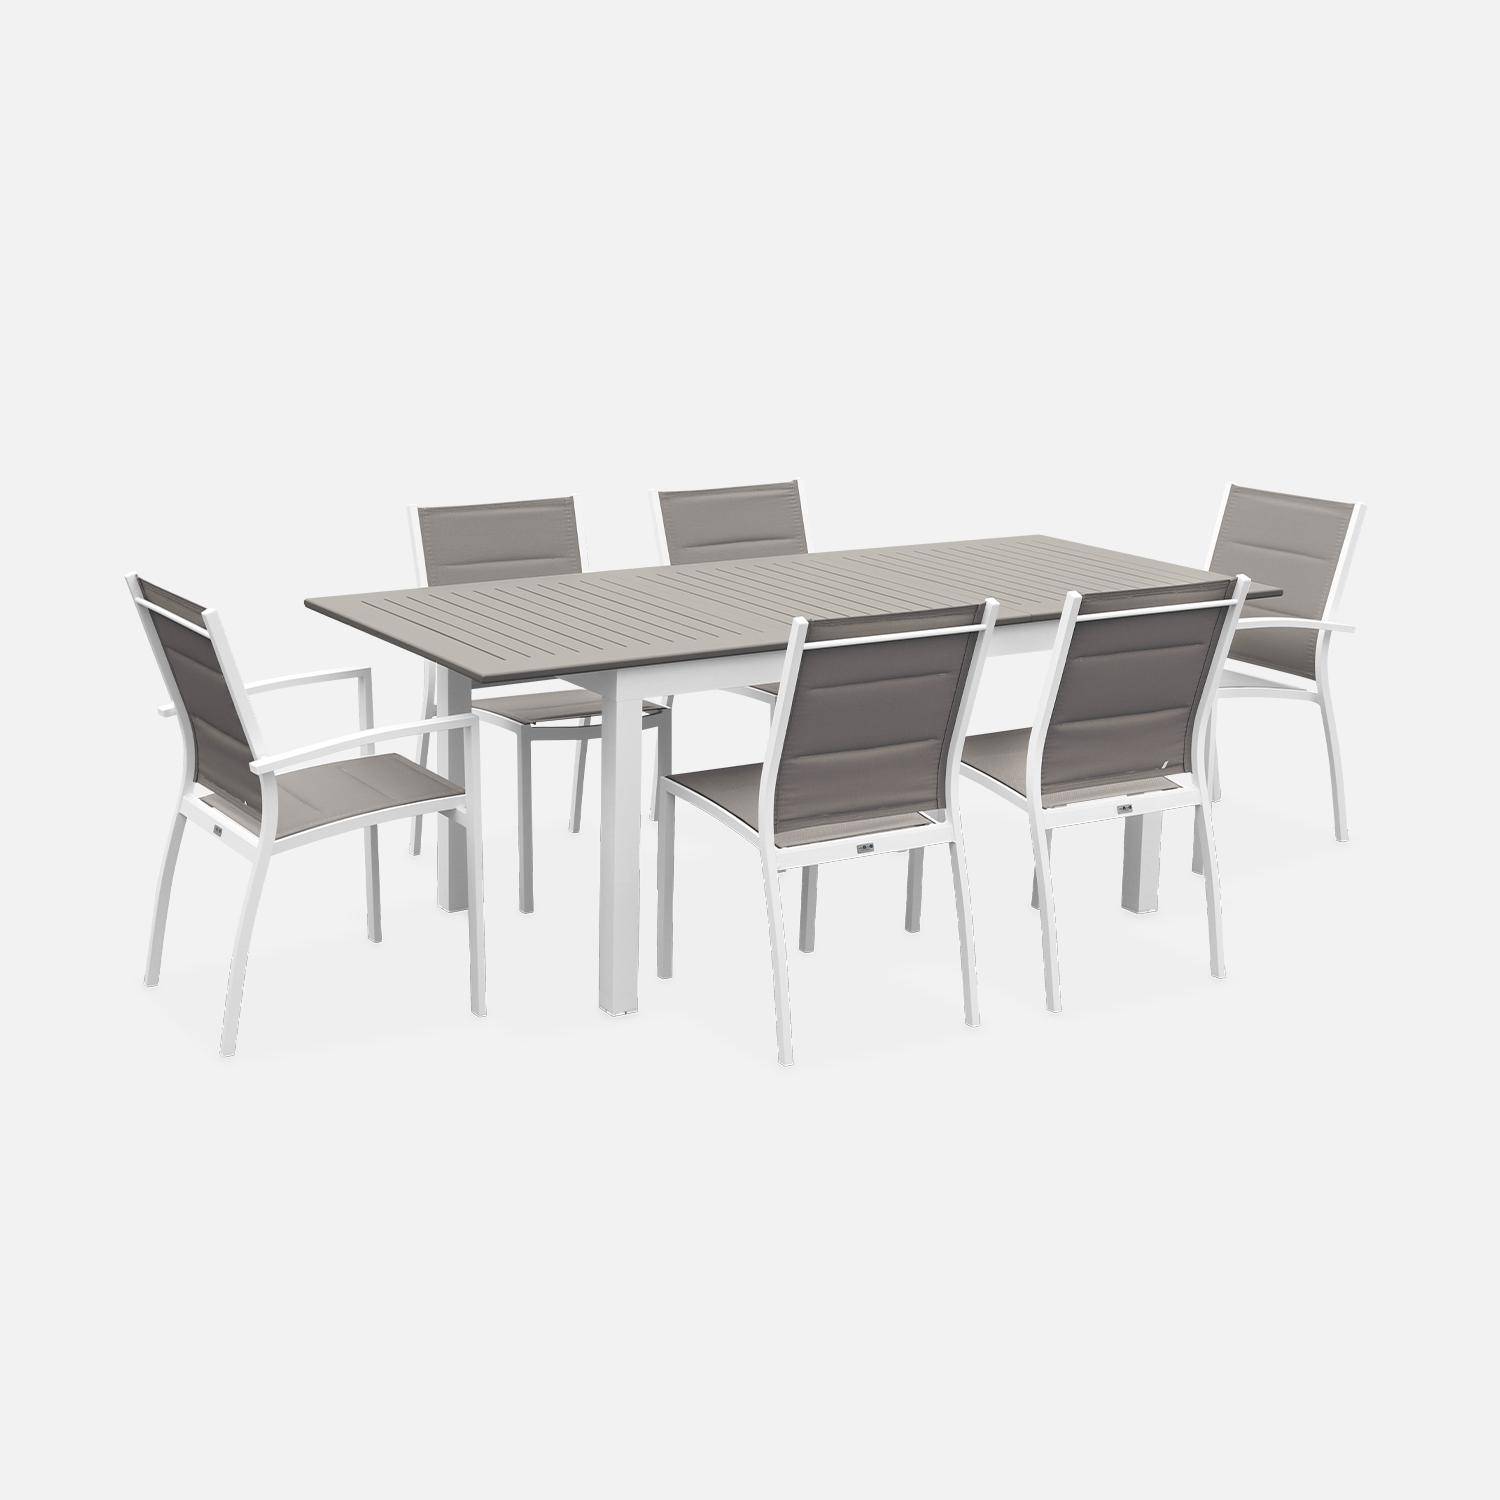 Set da giardino con tavolo allungabile - modello: Chicago 210, colore: Talpa - Tavolo in alluminio, dimensioni: 150/210cm con prolunga e 6 sedute in textilene,sweeek,Photo2